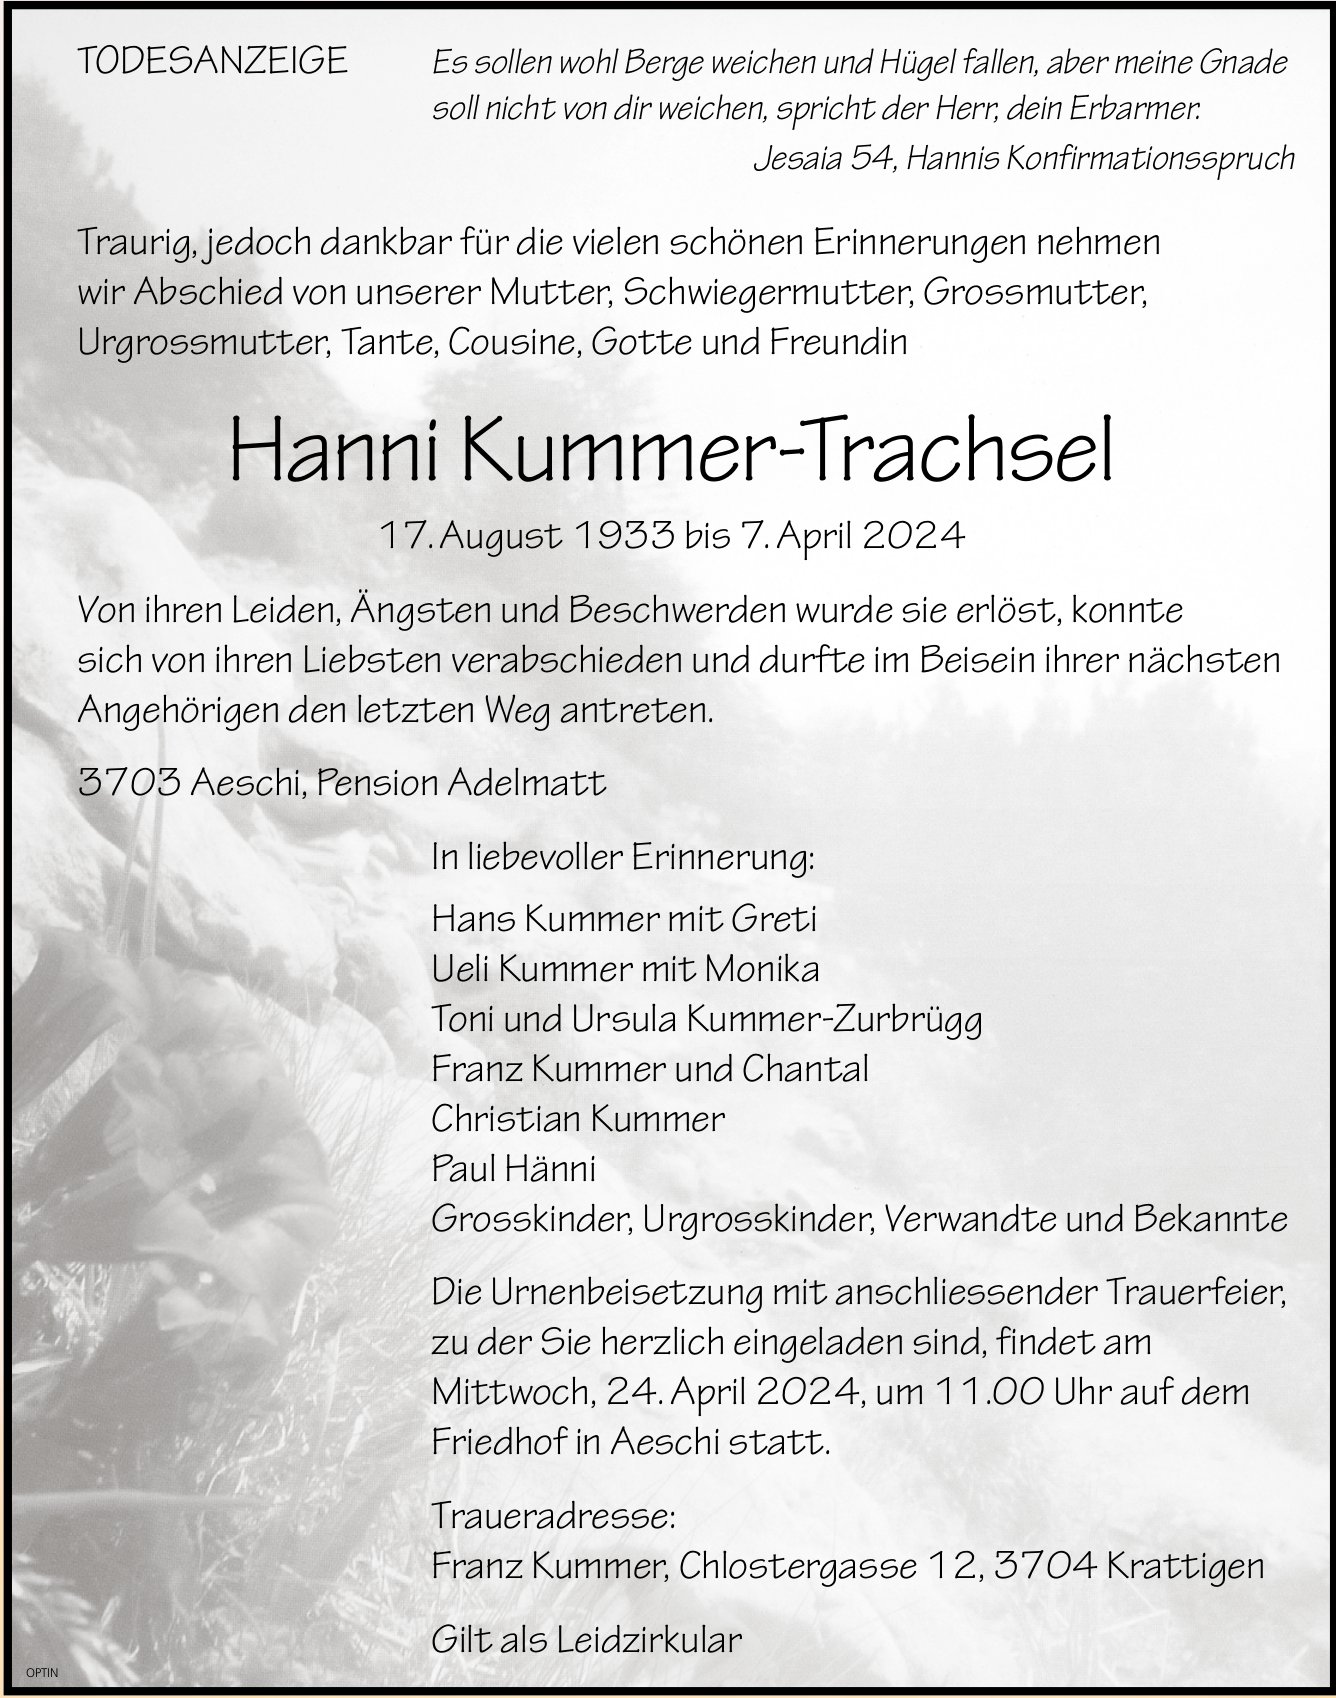 Hanni Kummer-Trachsel, April 2024 / TA